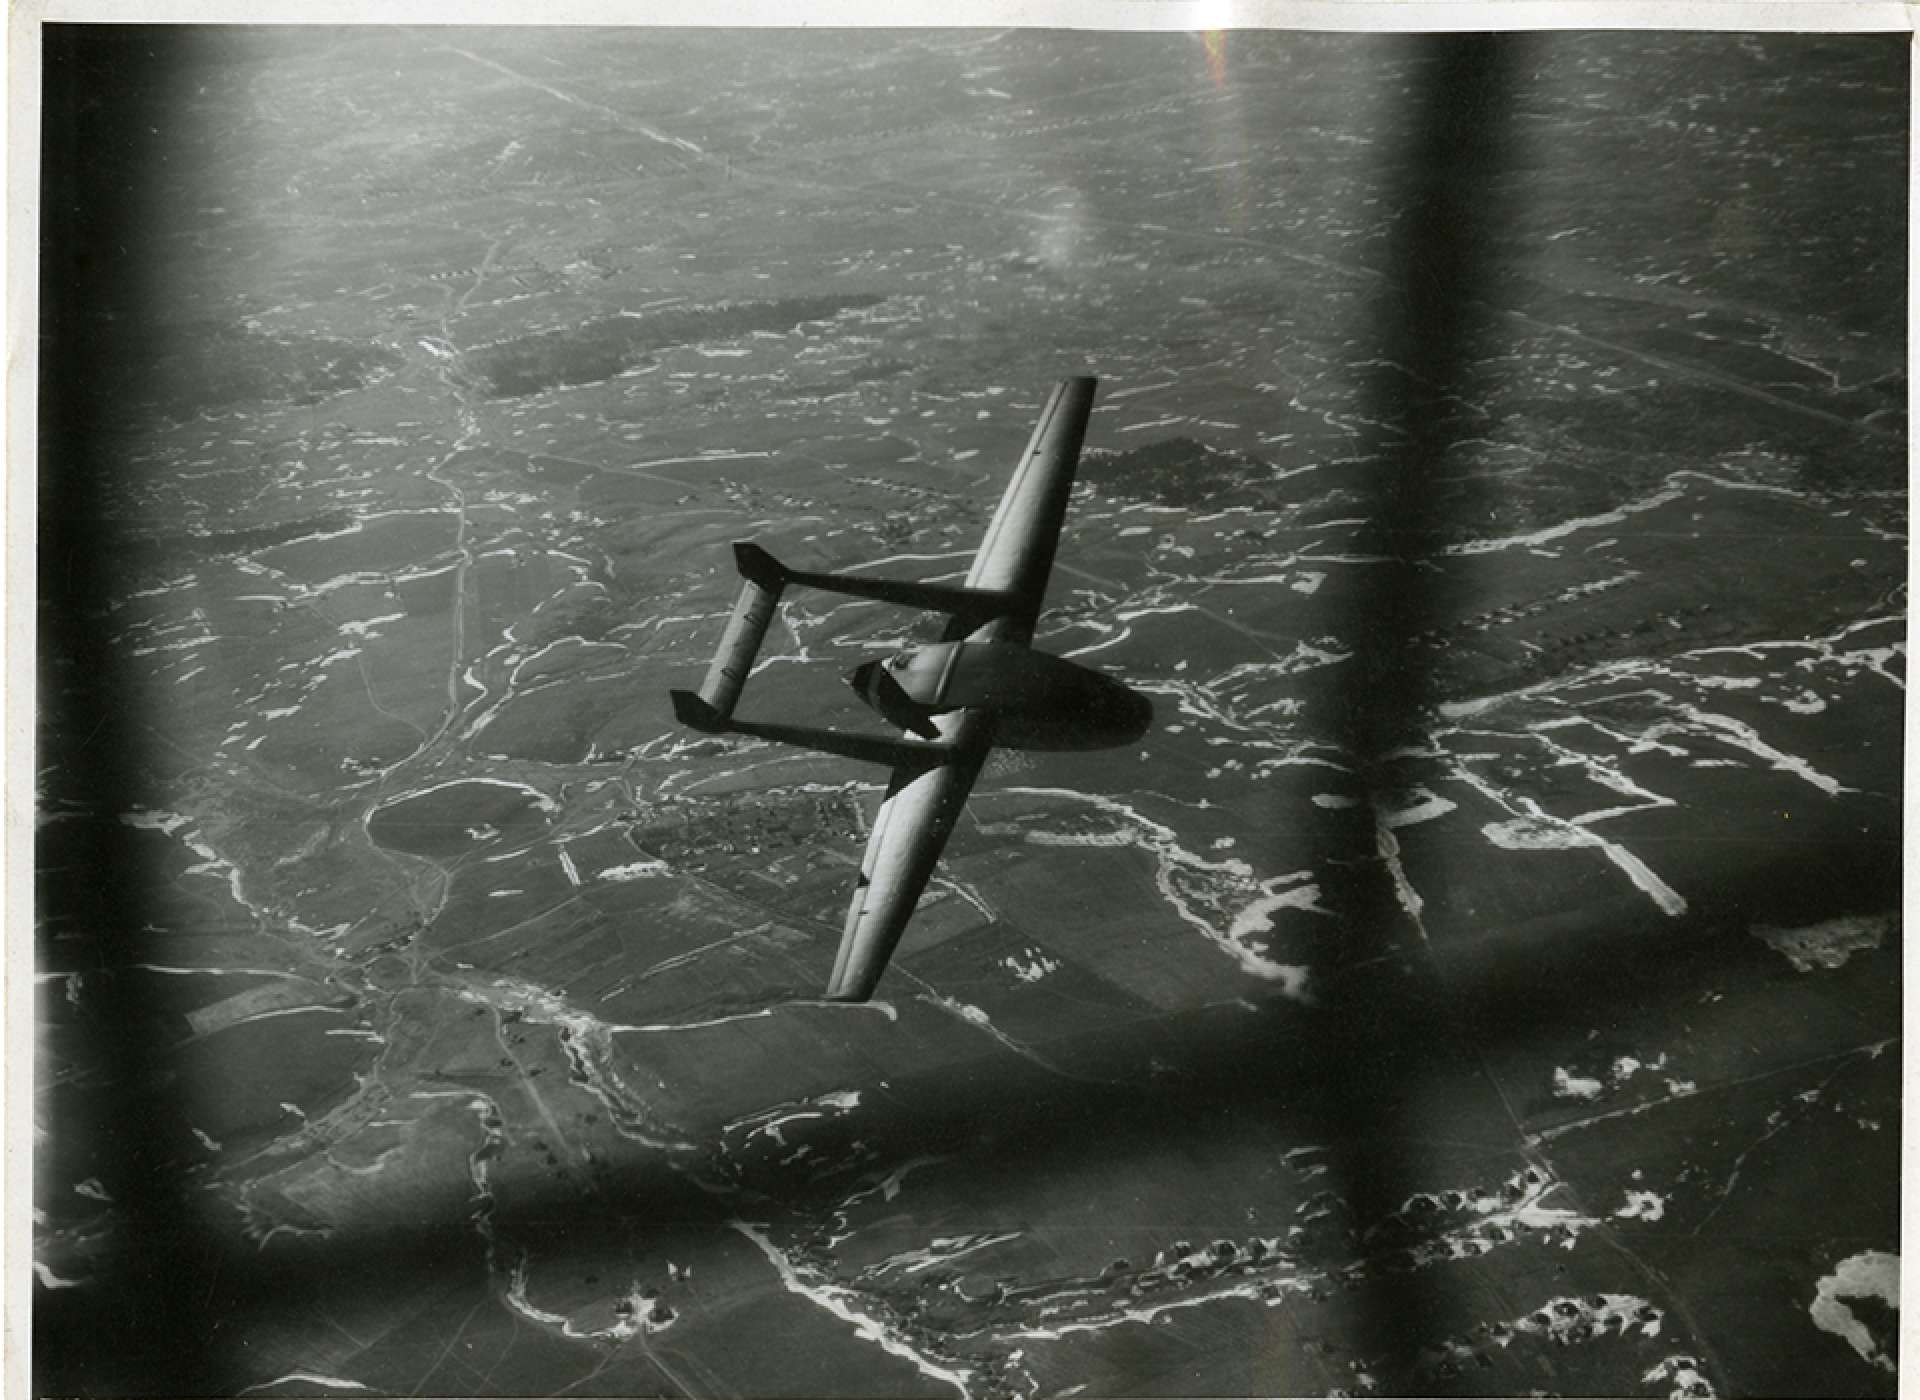 German glider Smolenck 1942